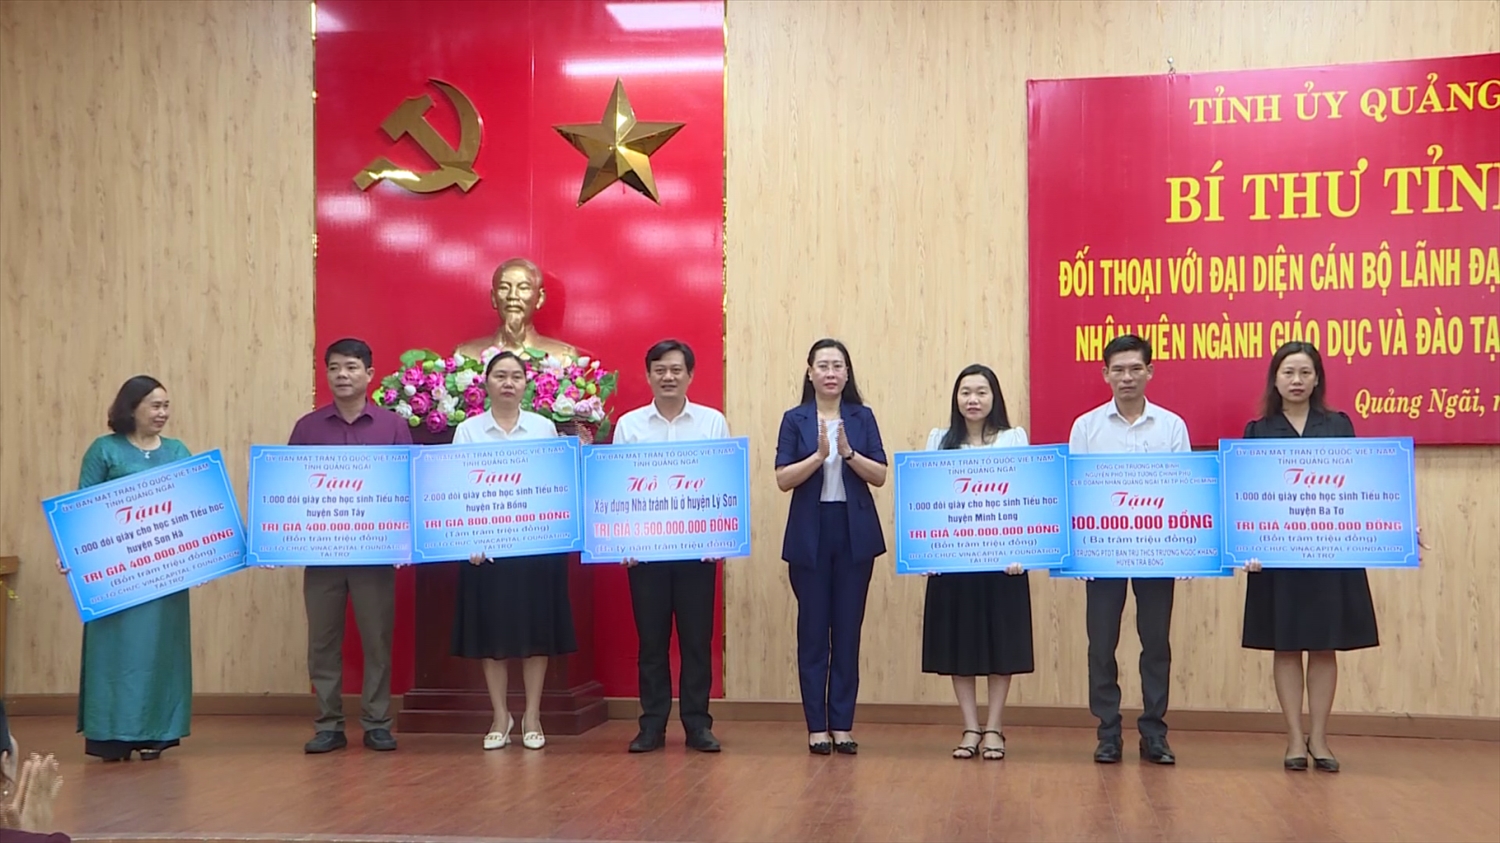 Bí thư Tỉnh ủy Quảng Ngãi Bùi Thị Quỳnh Vân cùng lãnh đạo tỉnh trao hỗ trợ kinh phí cho các đơn vị